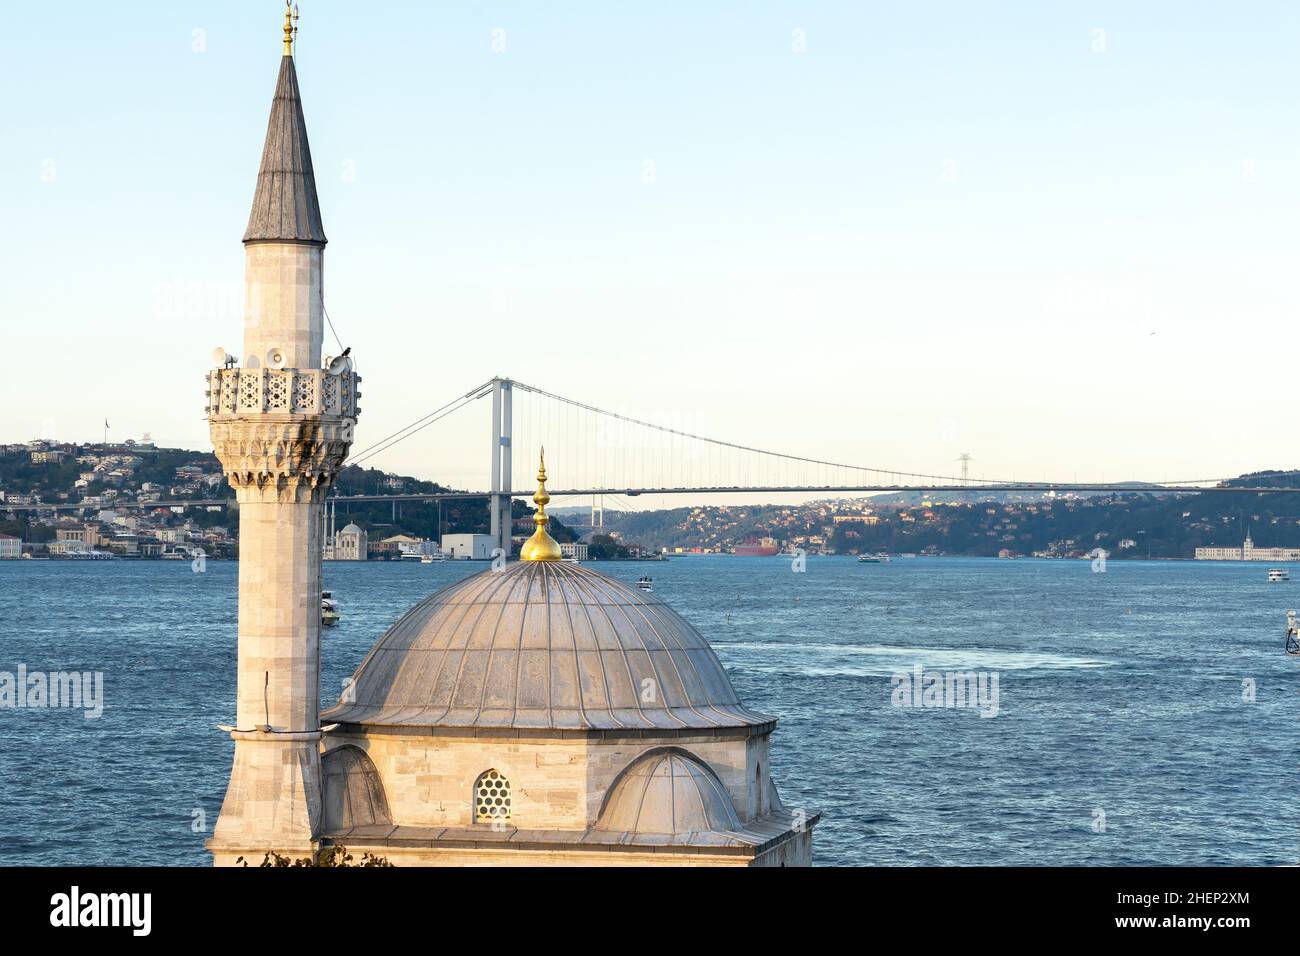 Semsi-Pascha-Moschee mit der Istanbuler Bosporus-Brücke im Hintergrund. Die Moschee Semsi Pascha wurde vom berühmten osmanischen Architekten Mimar Sinan entworfen. Stockfoto